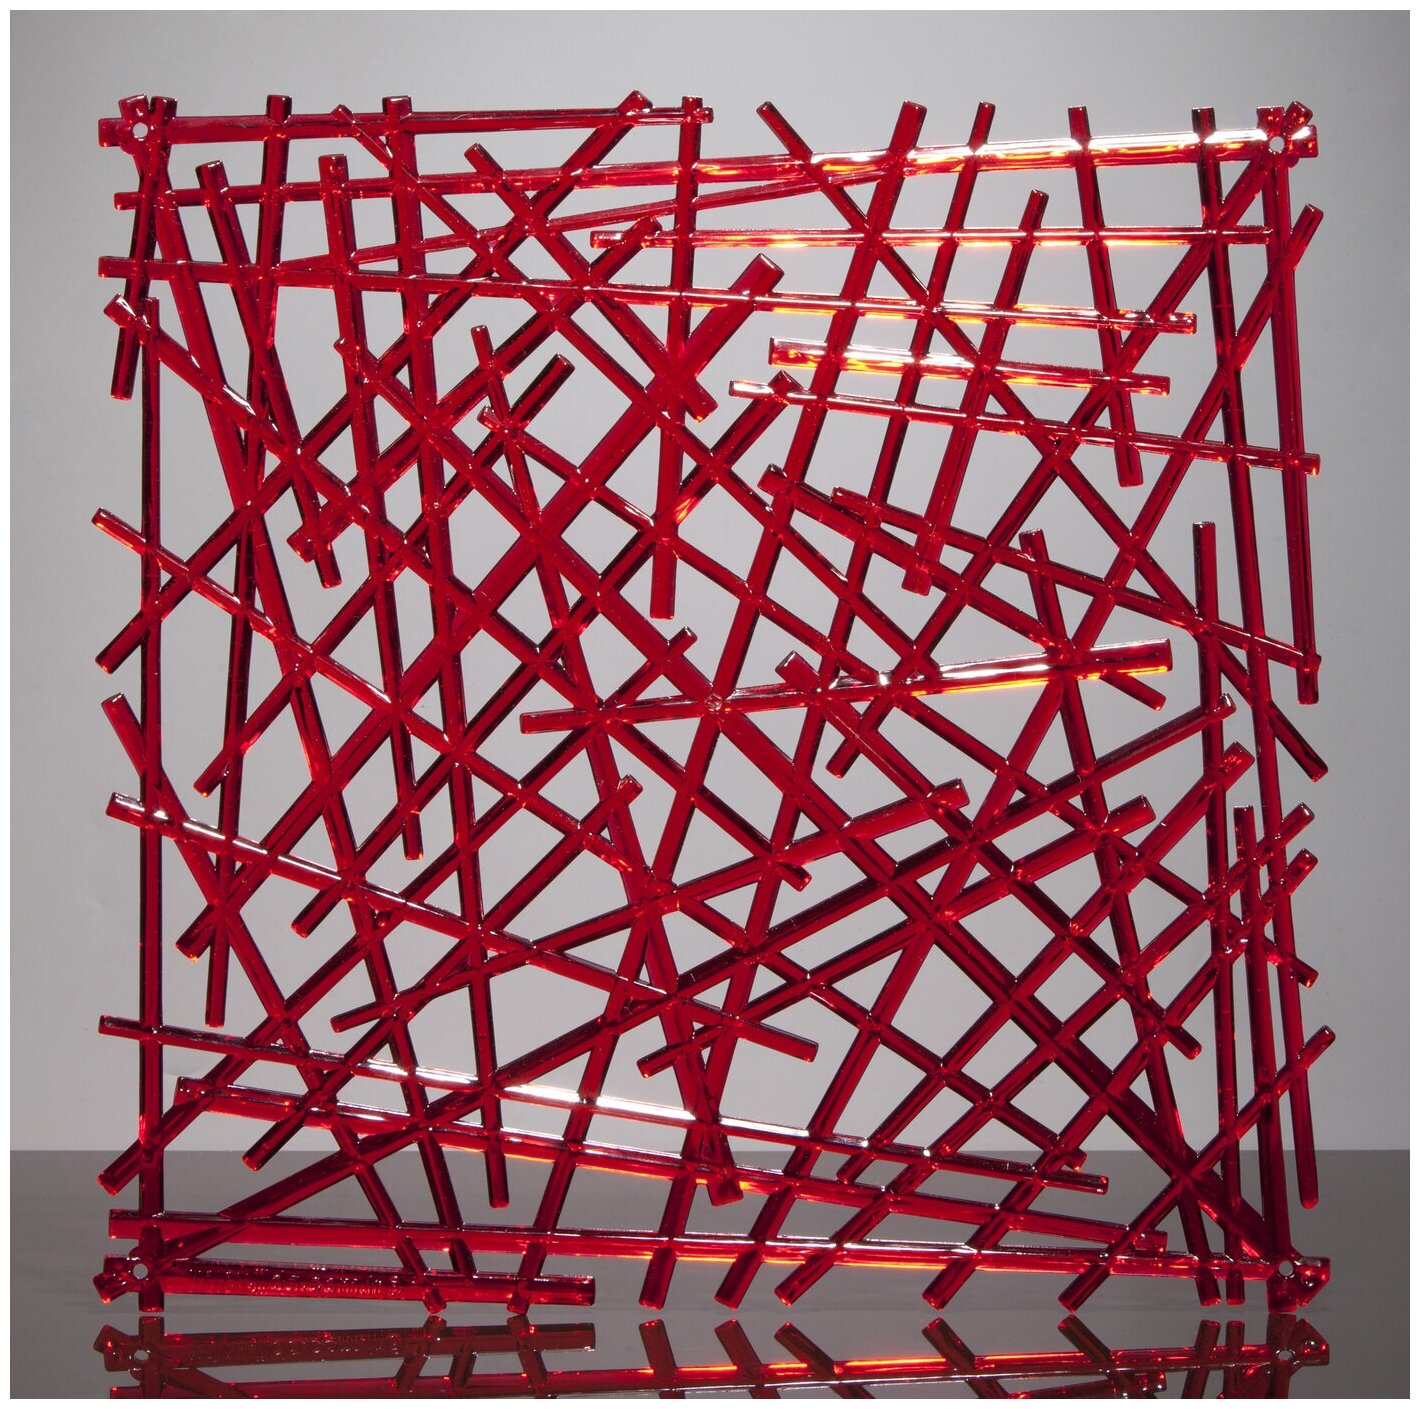 Комплект декоративных панелей из 4 шт. Jilda, коллекция "Хворост", 29х29 см, материал полистирол, цвет - красный